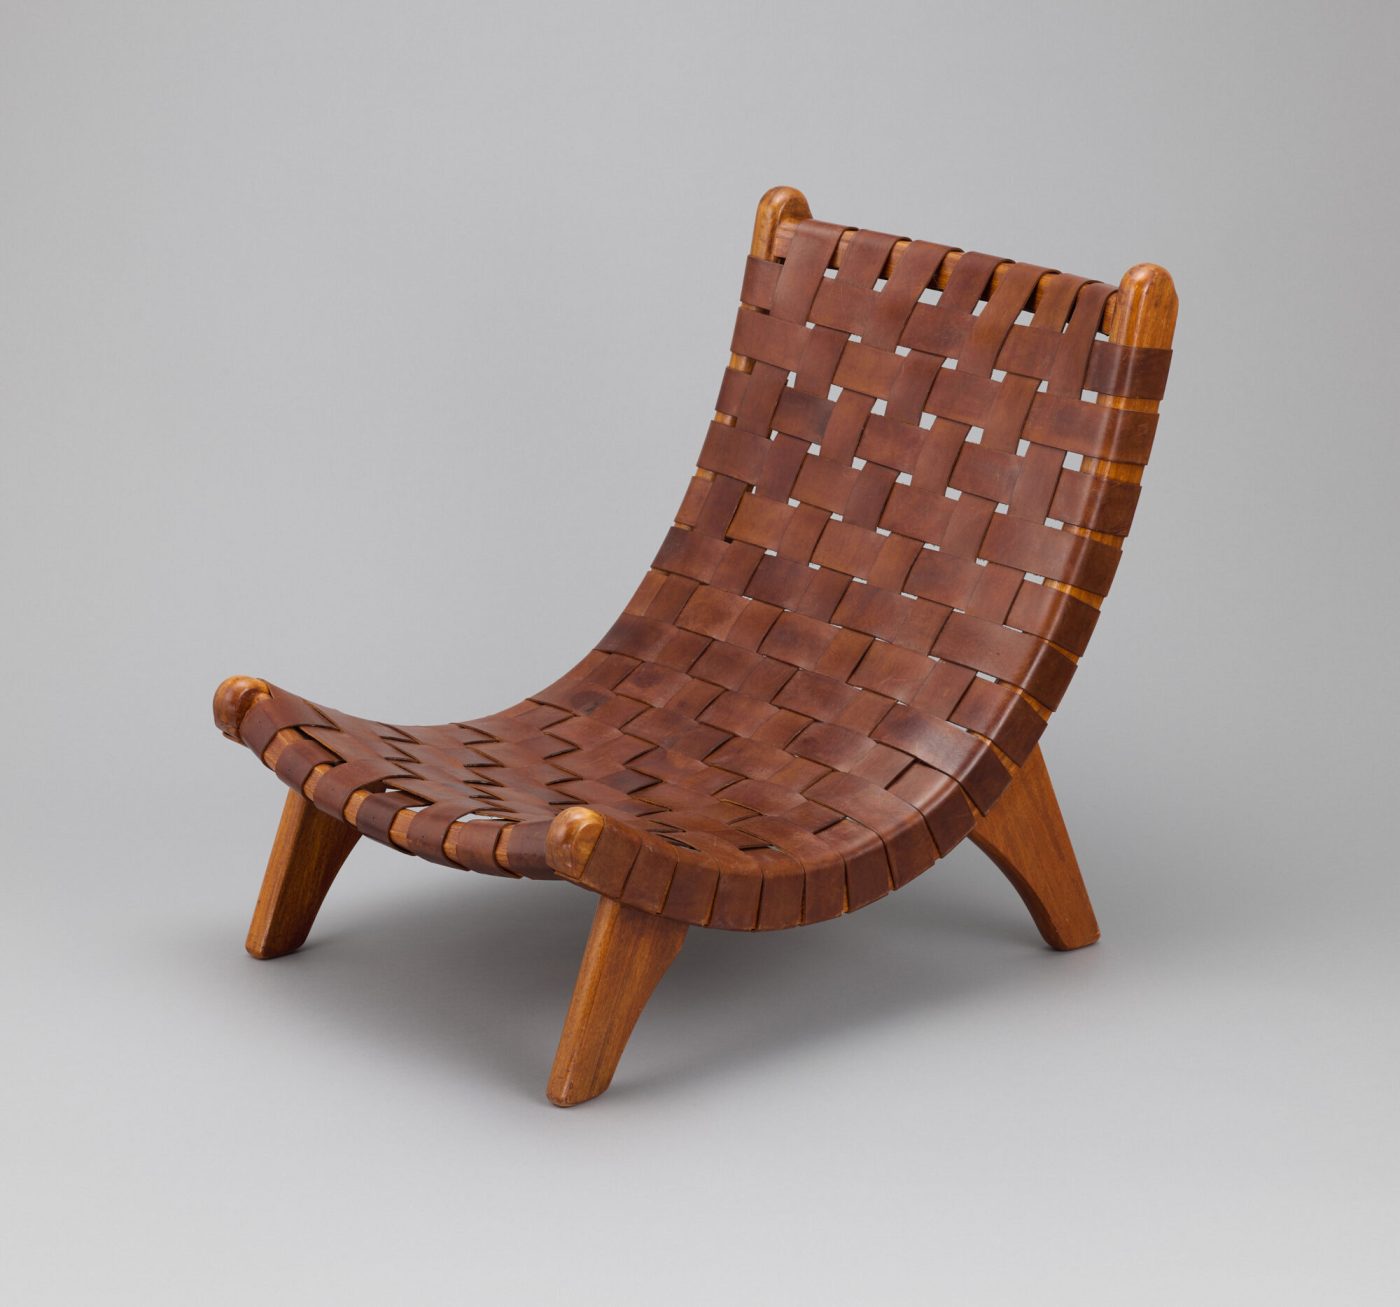 Ca. 1940 Alacrán, or San Miguel, lounge chair by MICHAEL VAN BEUREN